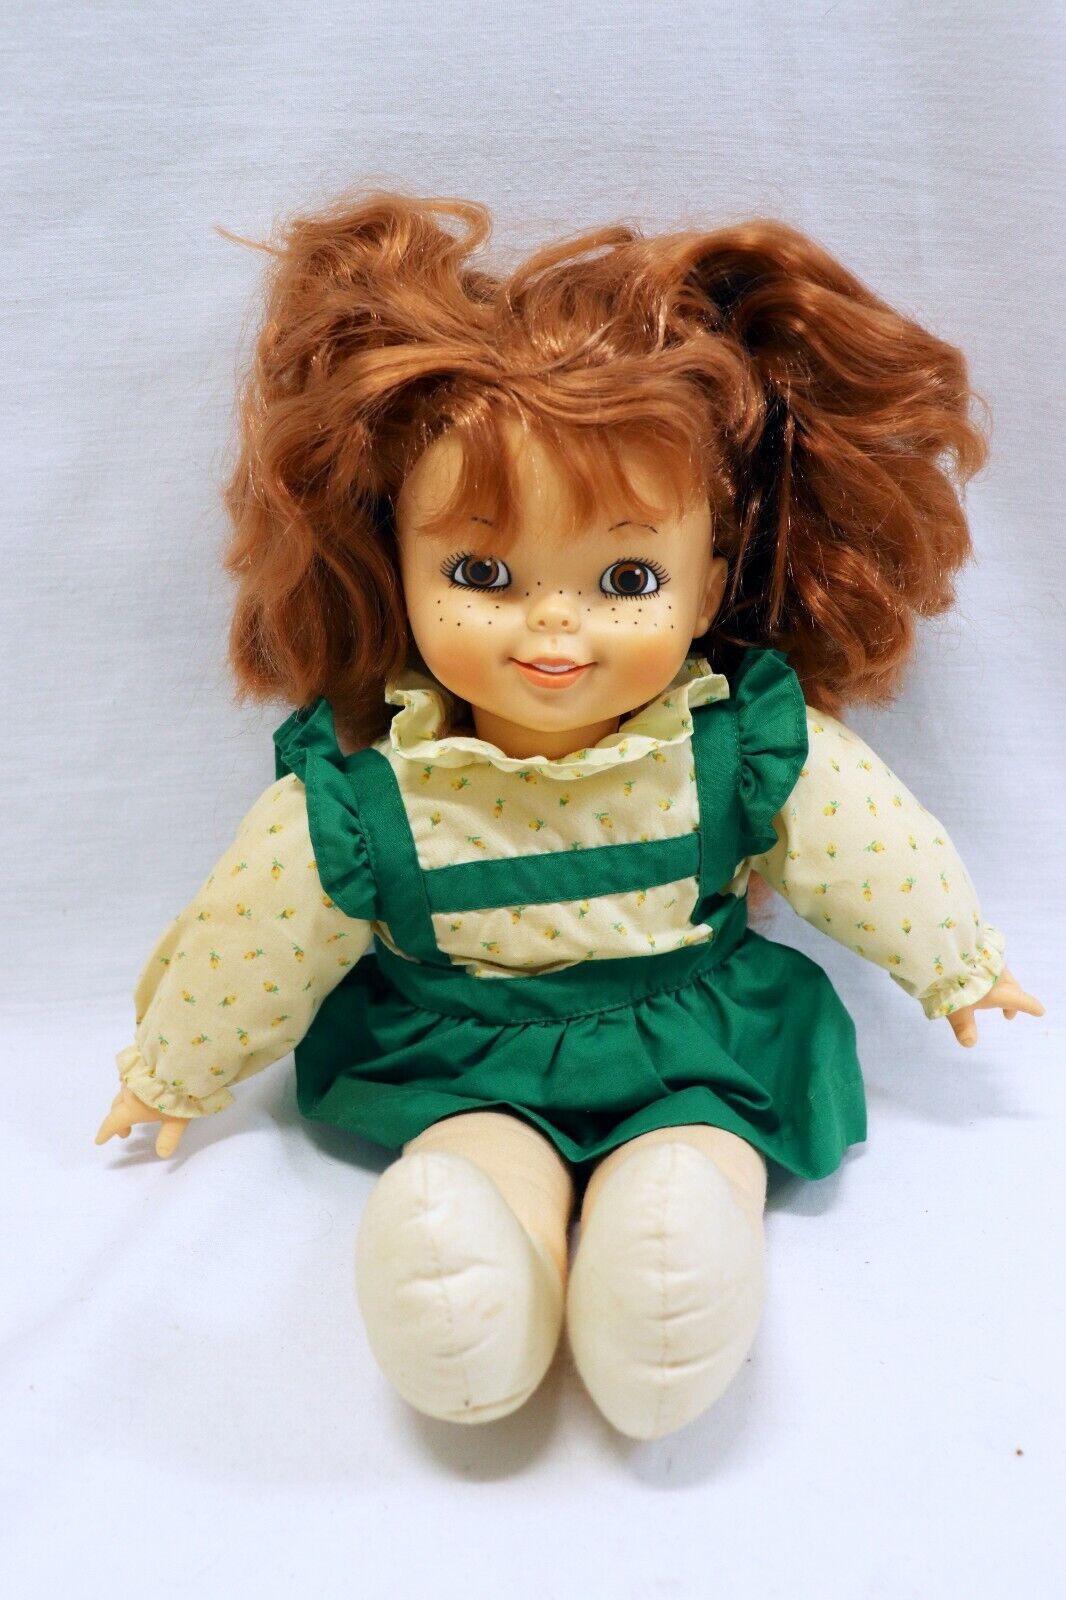 ORIGINAL Vintage 1988 Northern Toilet Tissue Baby Doll 